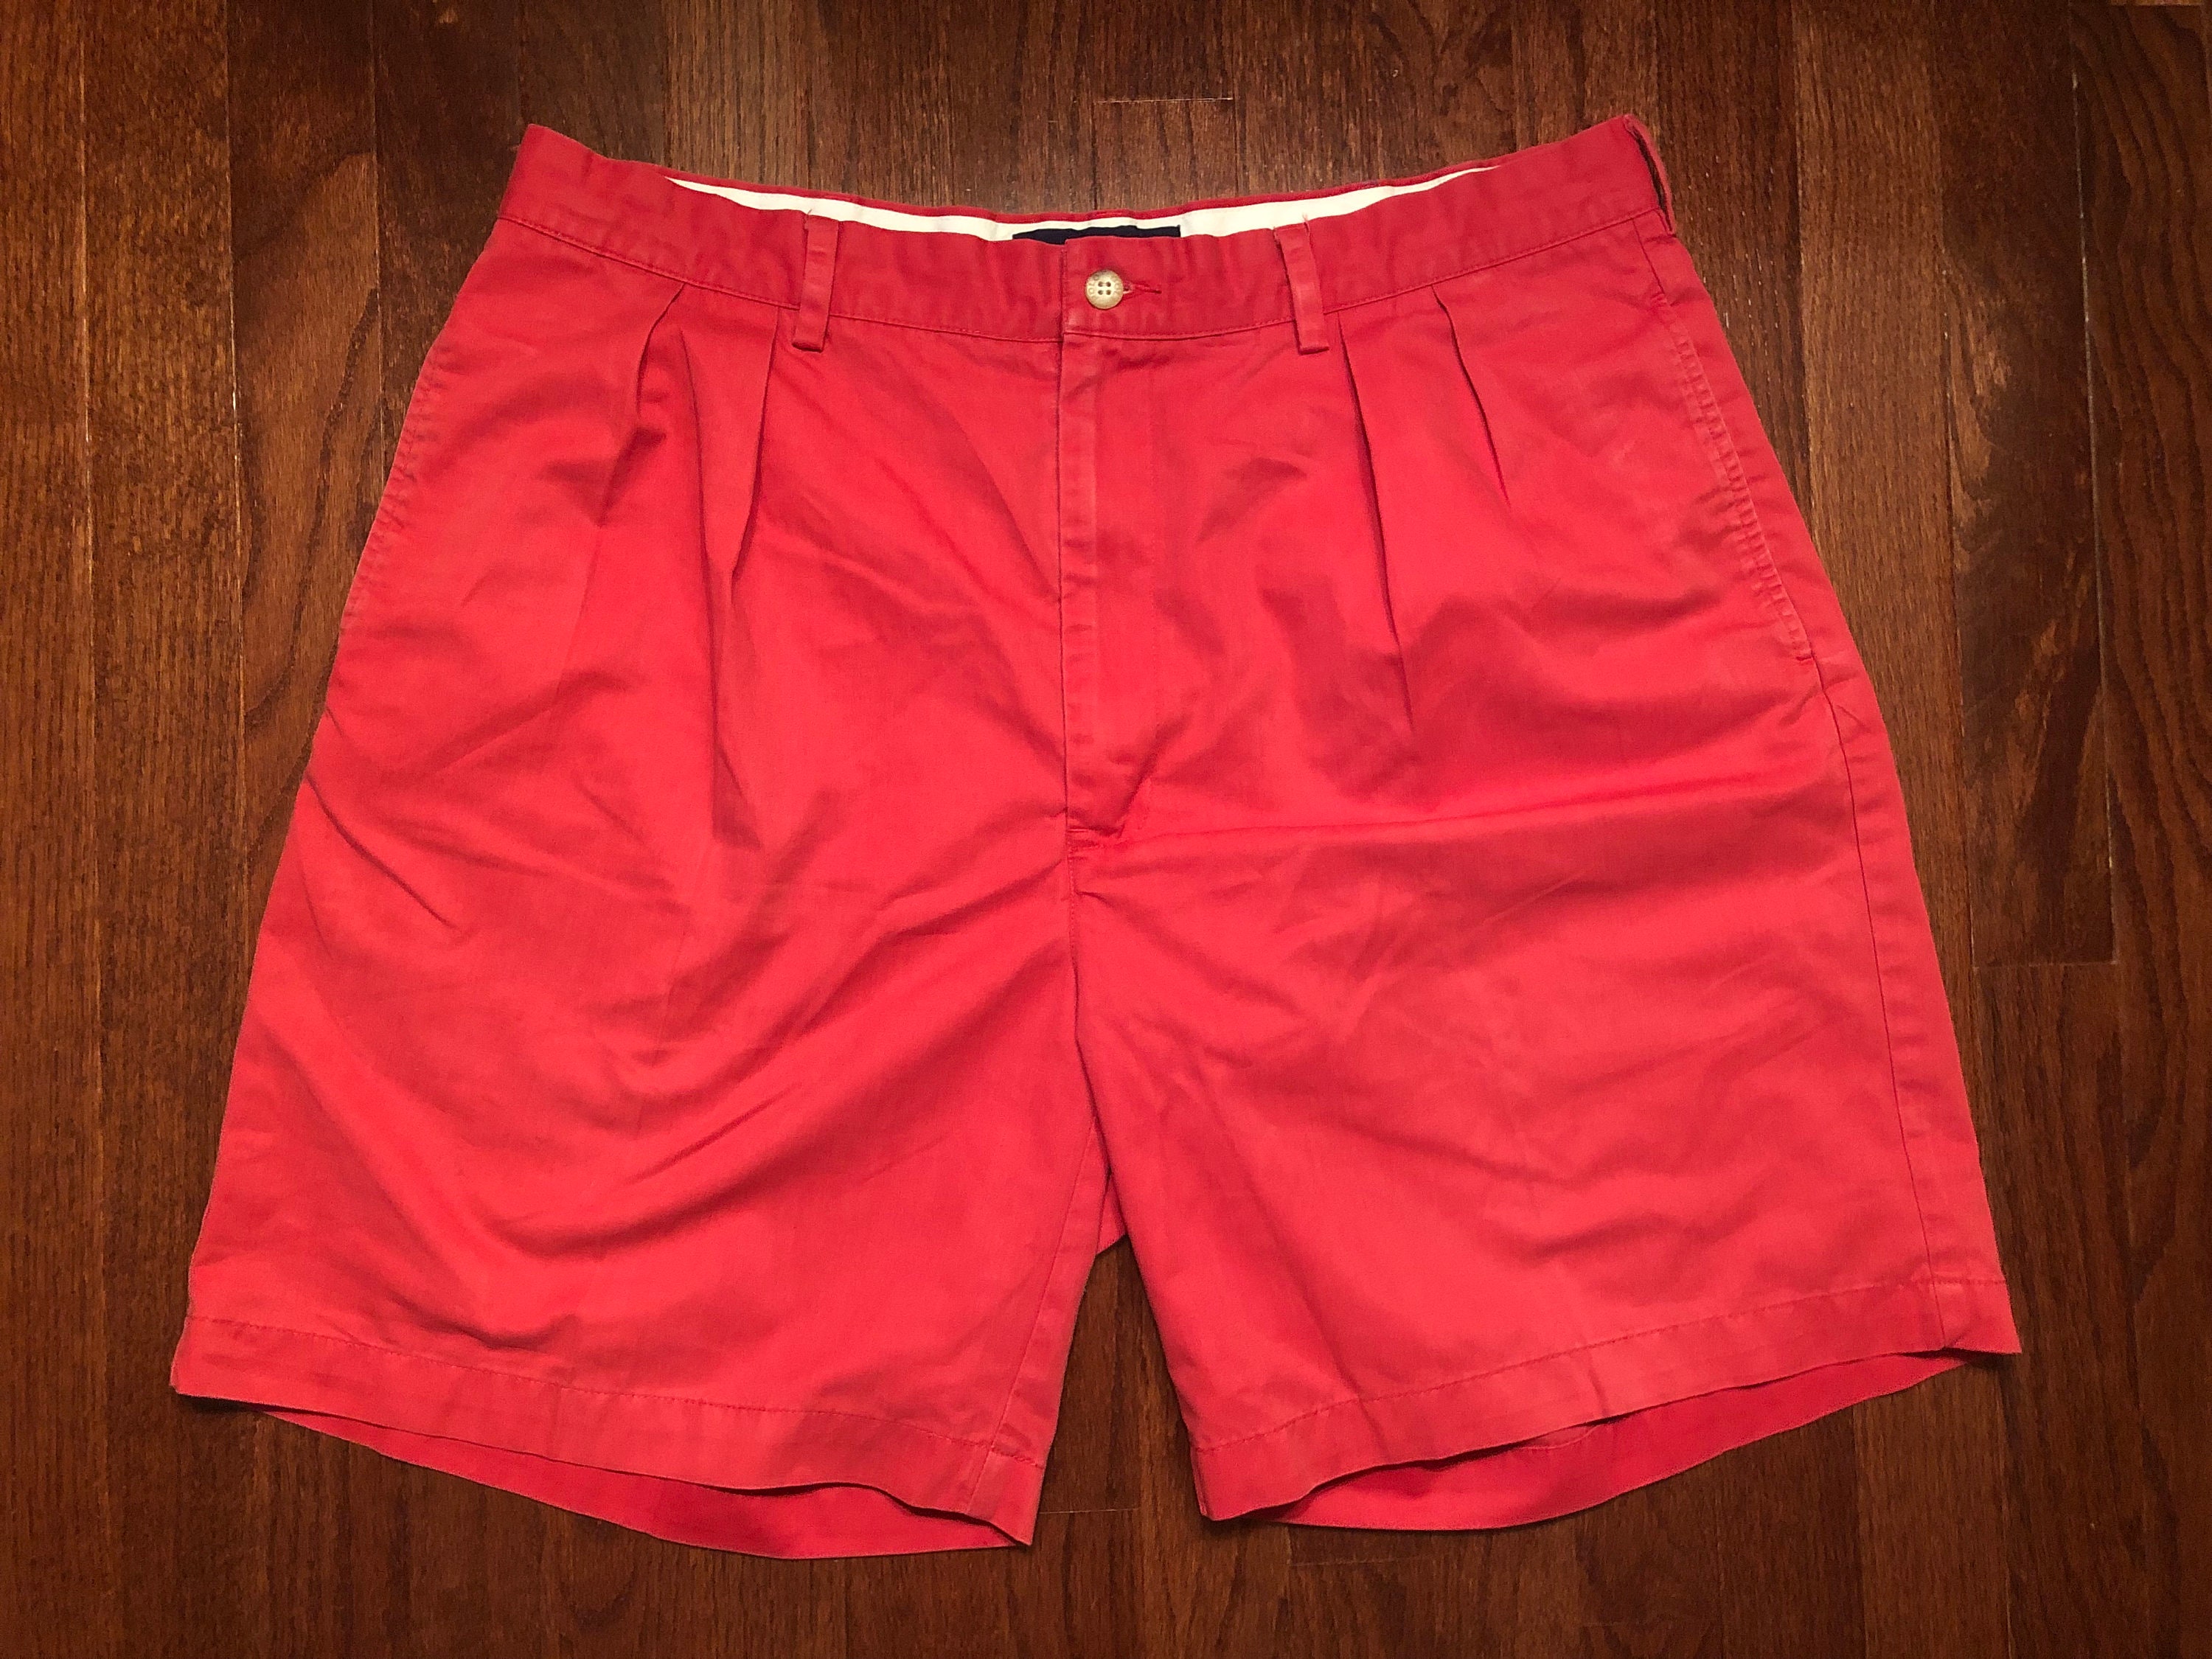 Vintage Polo Shorts 